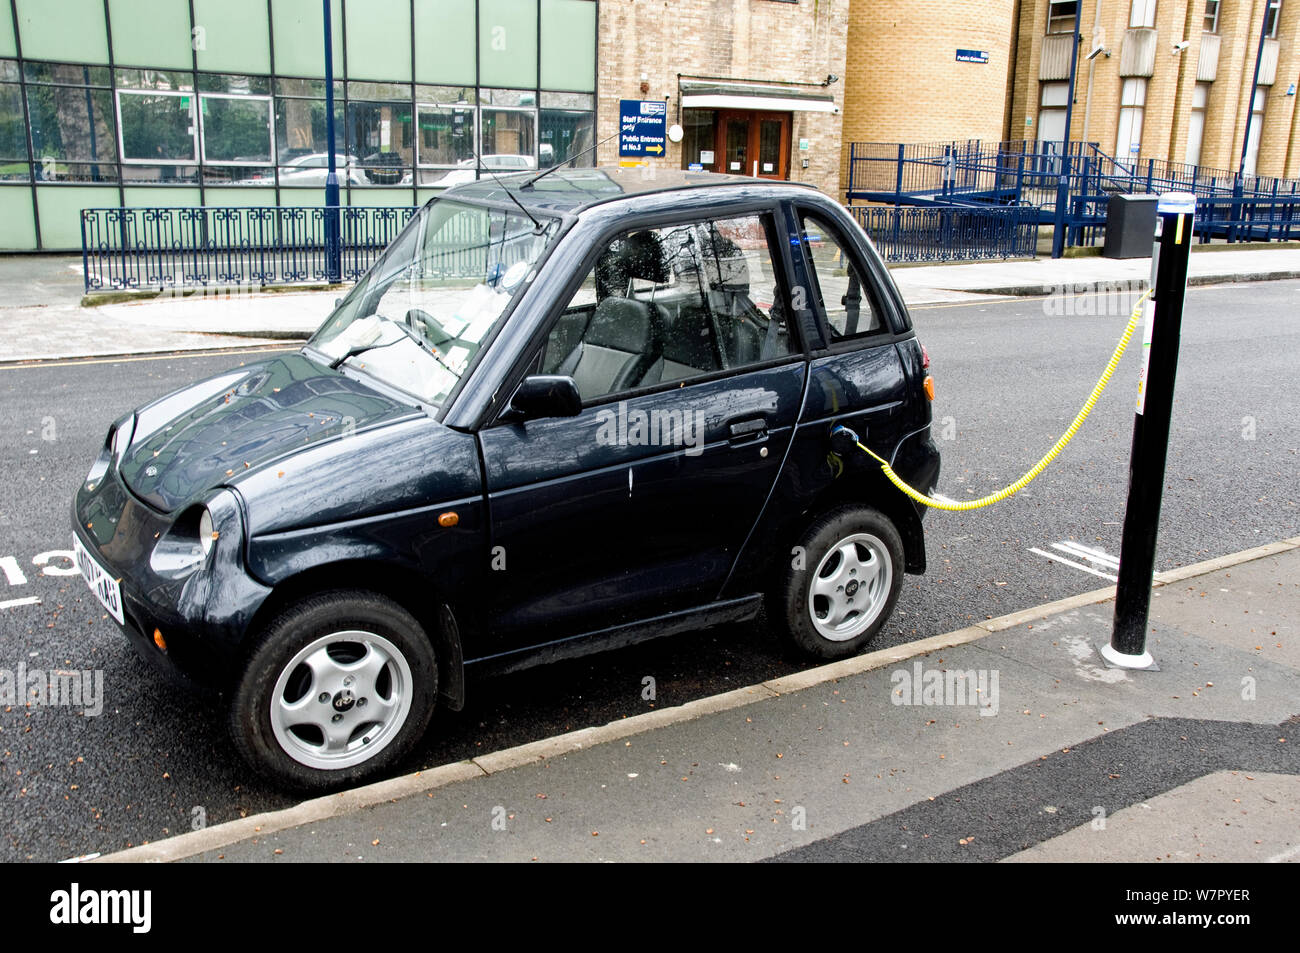 Recarga de coches eléctricos en un sitio de recarga del vehículo eléctrico Elektrobay en una calle urbana, London Borough of Islington, Inglaterra Foto de stock